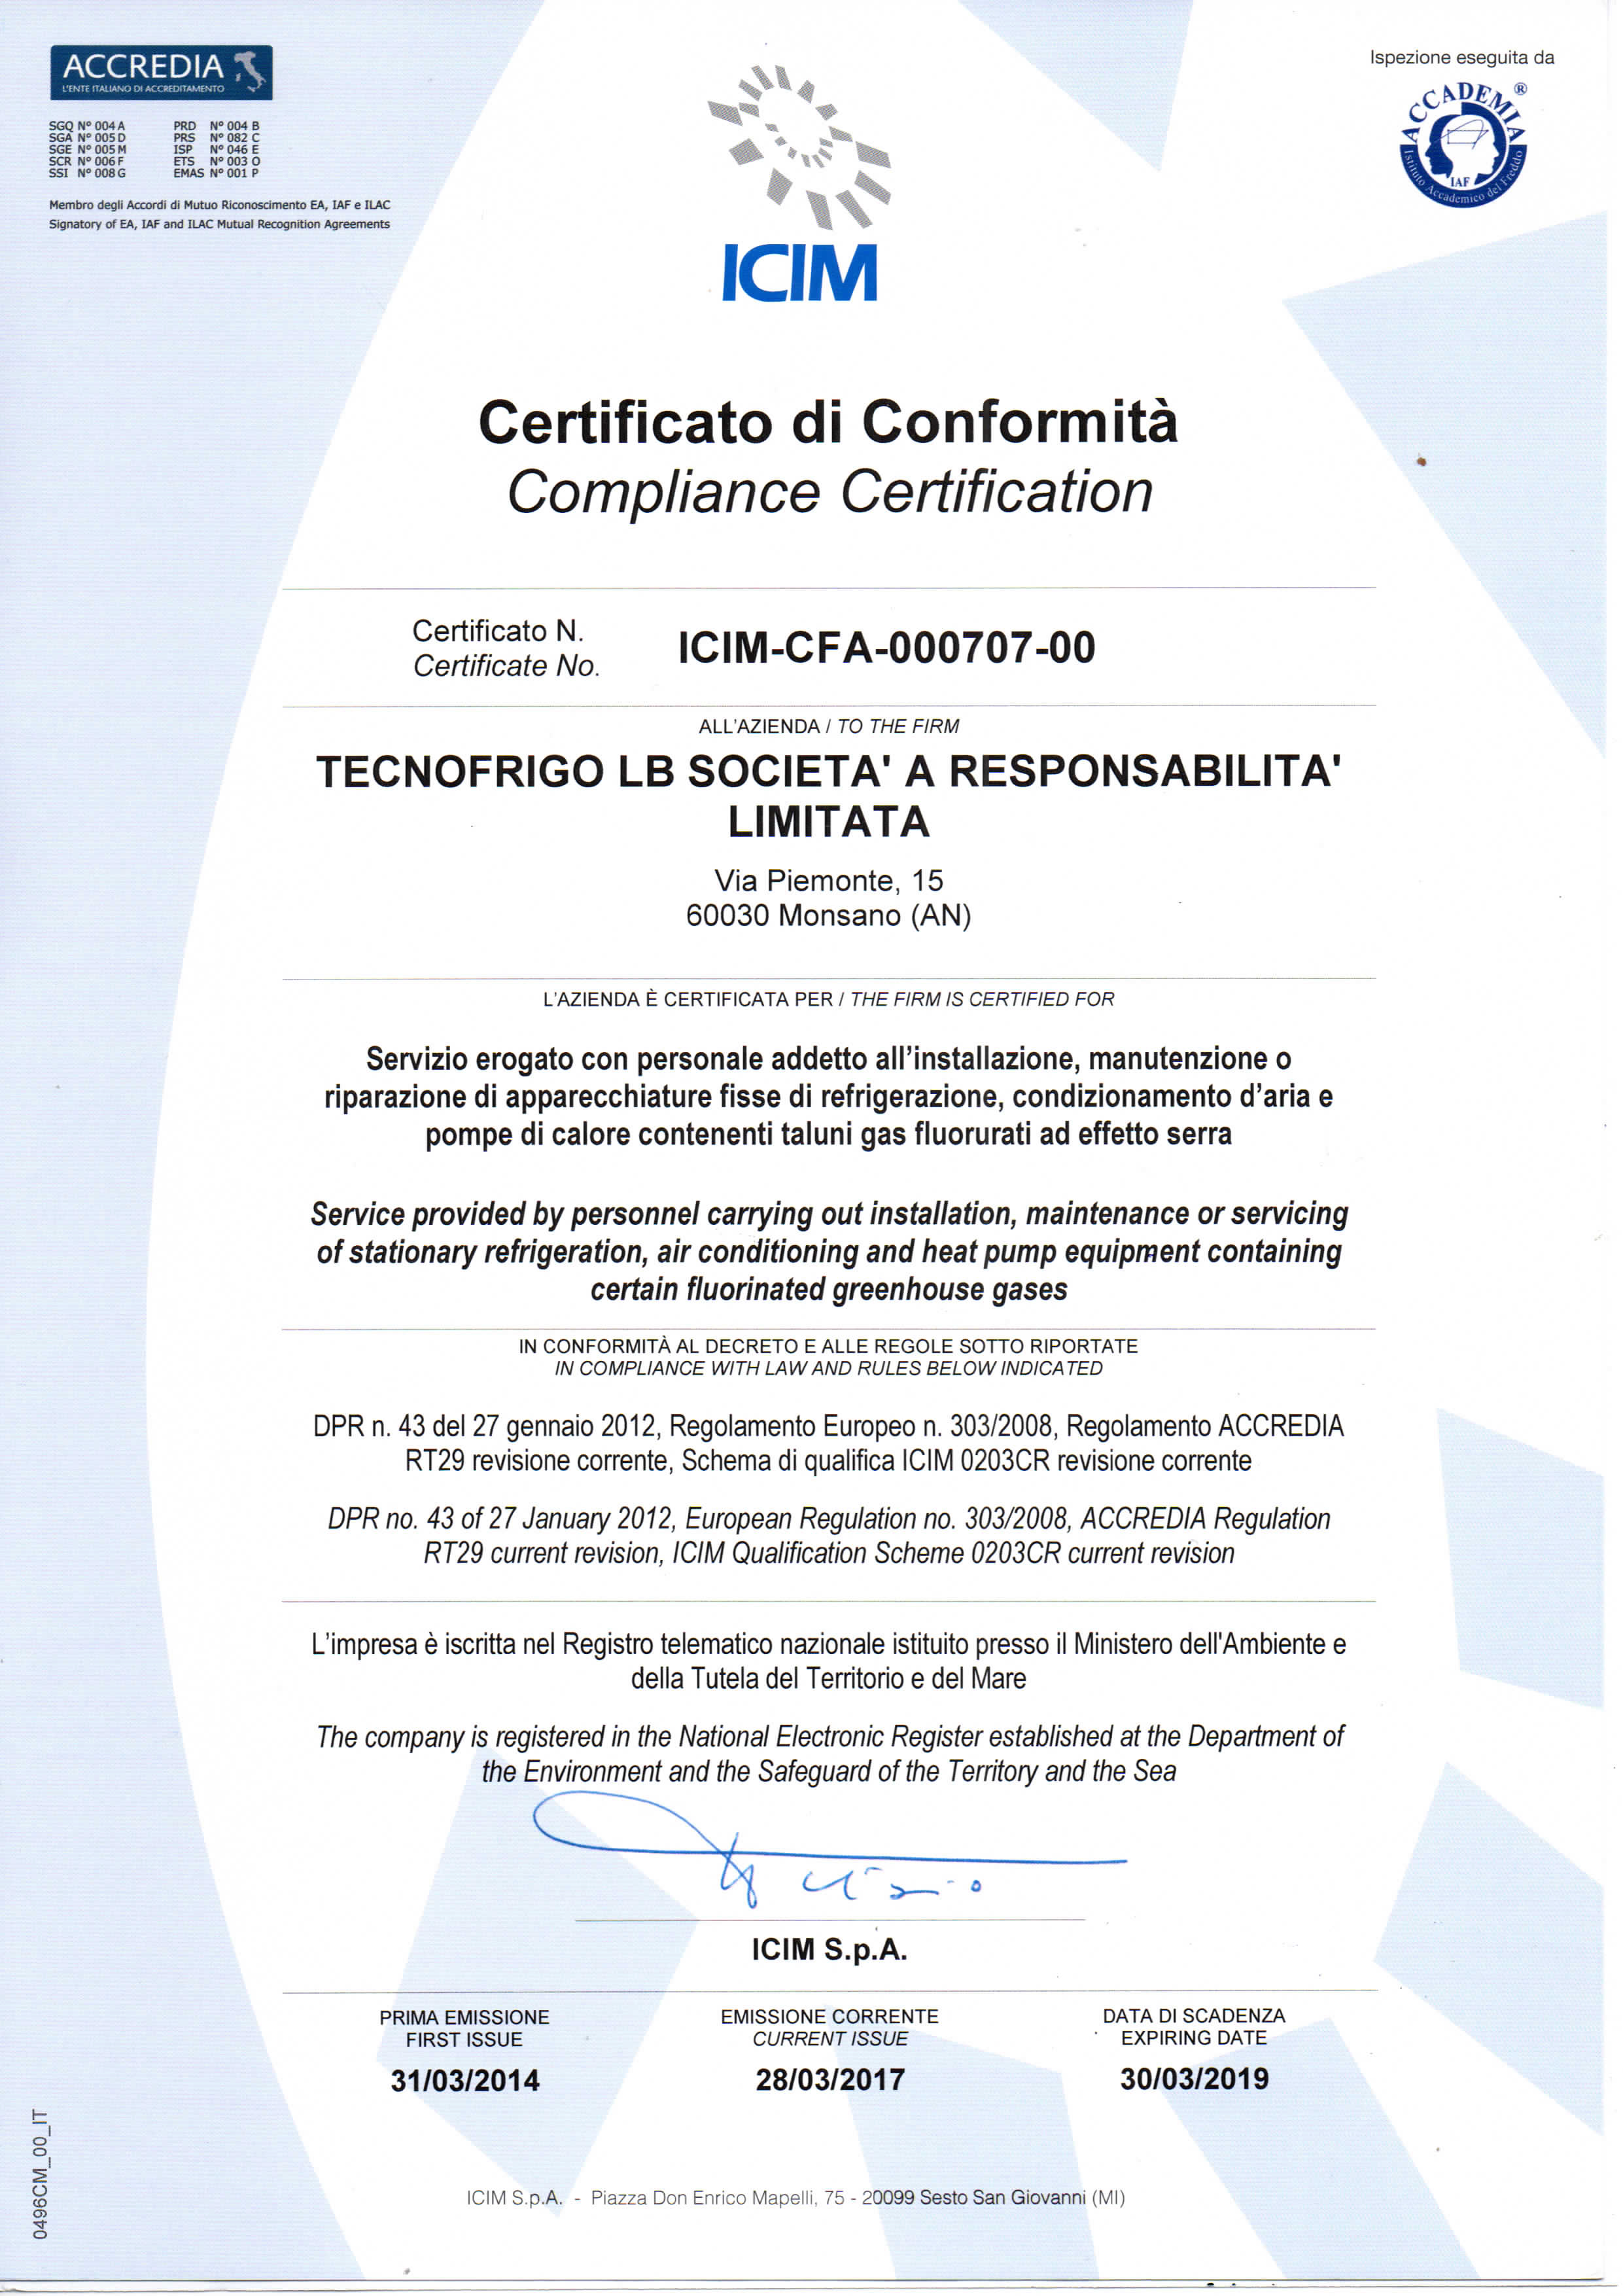 ICIM-CFA-000707-00